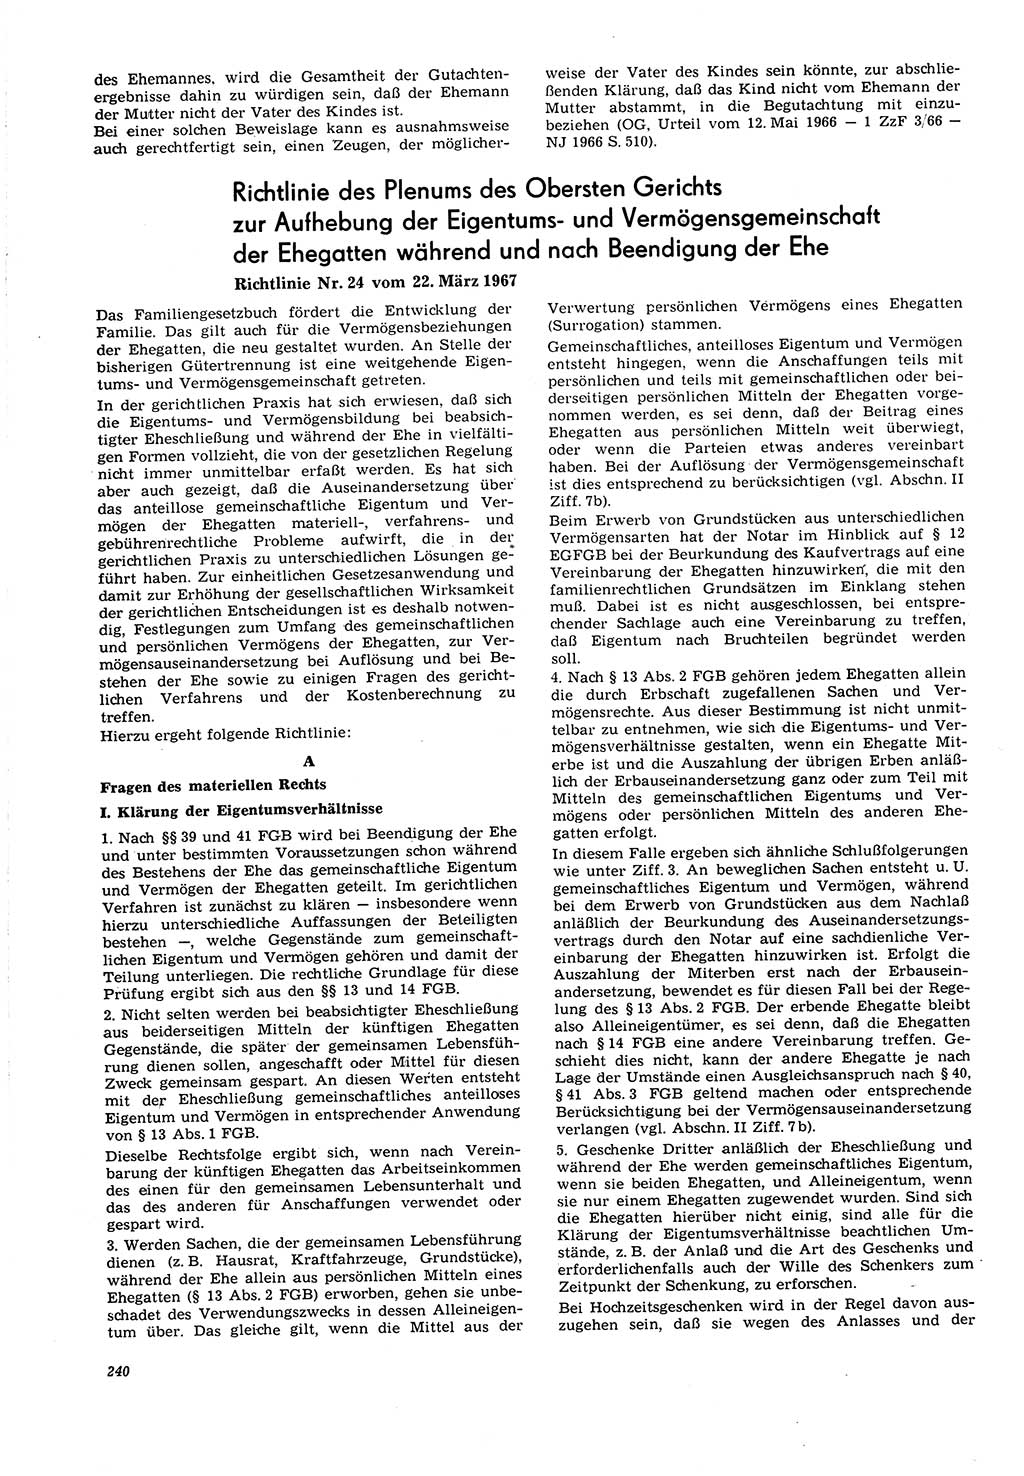 Neue Justiz (NJ), Zeitschrift für Recht und Rechtswissenschaft [Deutsche Demokratische Republik (DDR)], 21. Jahrgang 1967, Seite 240 (NJ DDR 1967, S. 240)